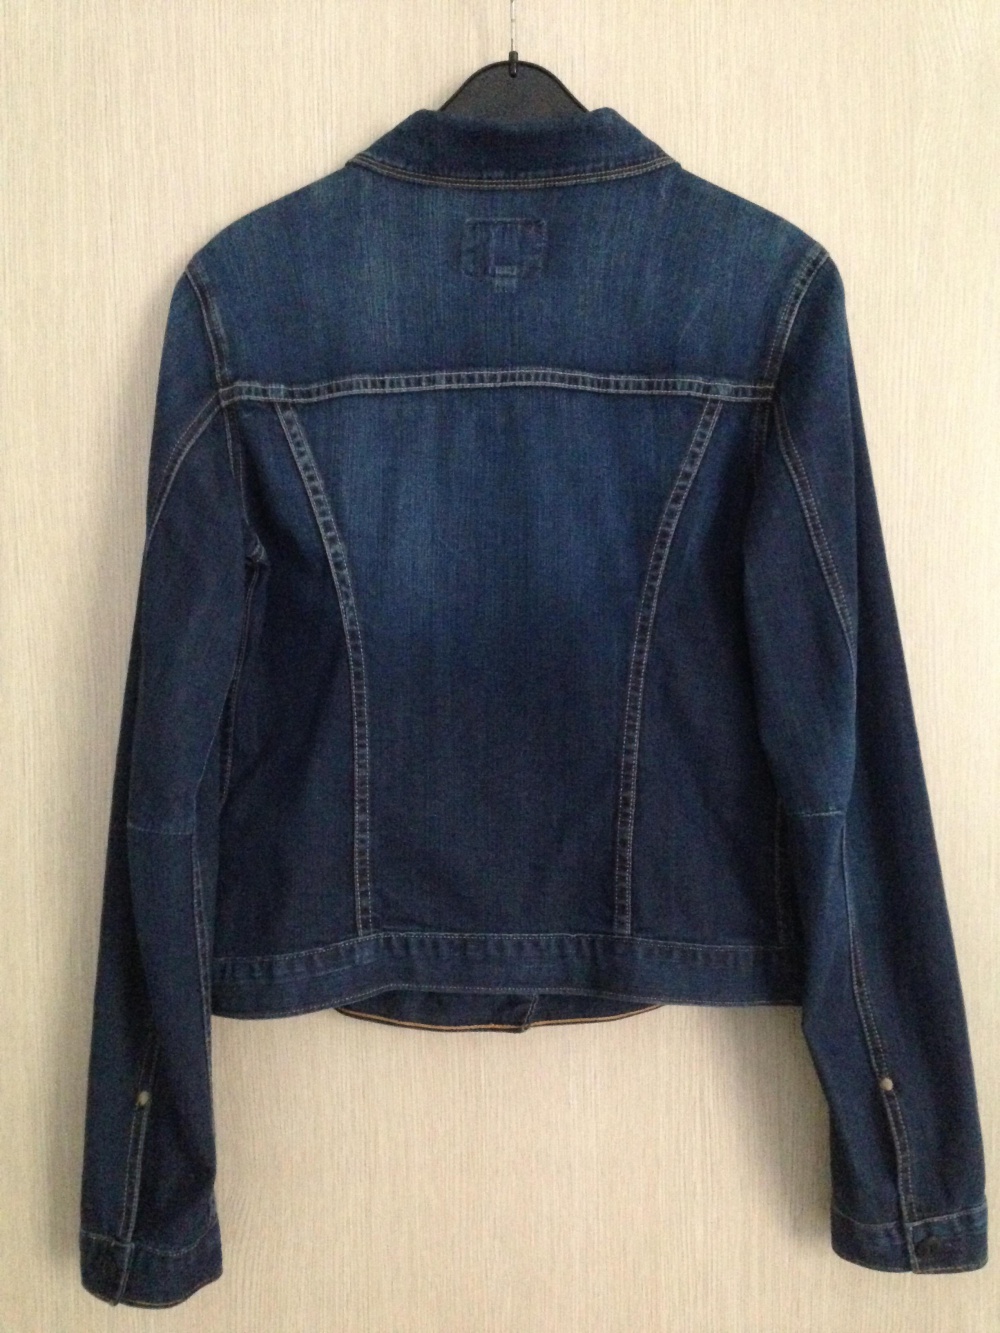 Джинсовая куртка , размер - M,  " ADRIANO GOLDSCHMIED ", США.